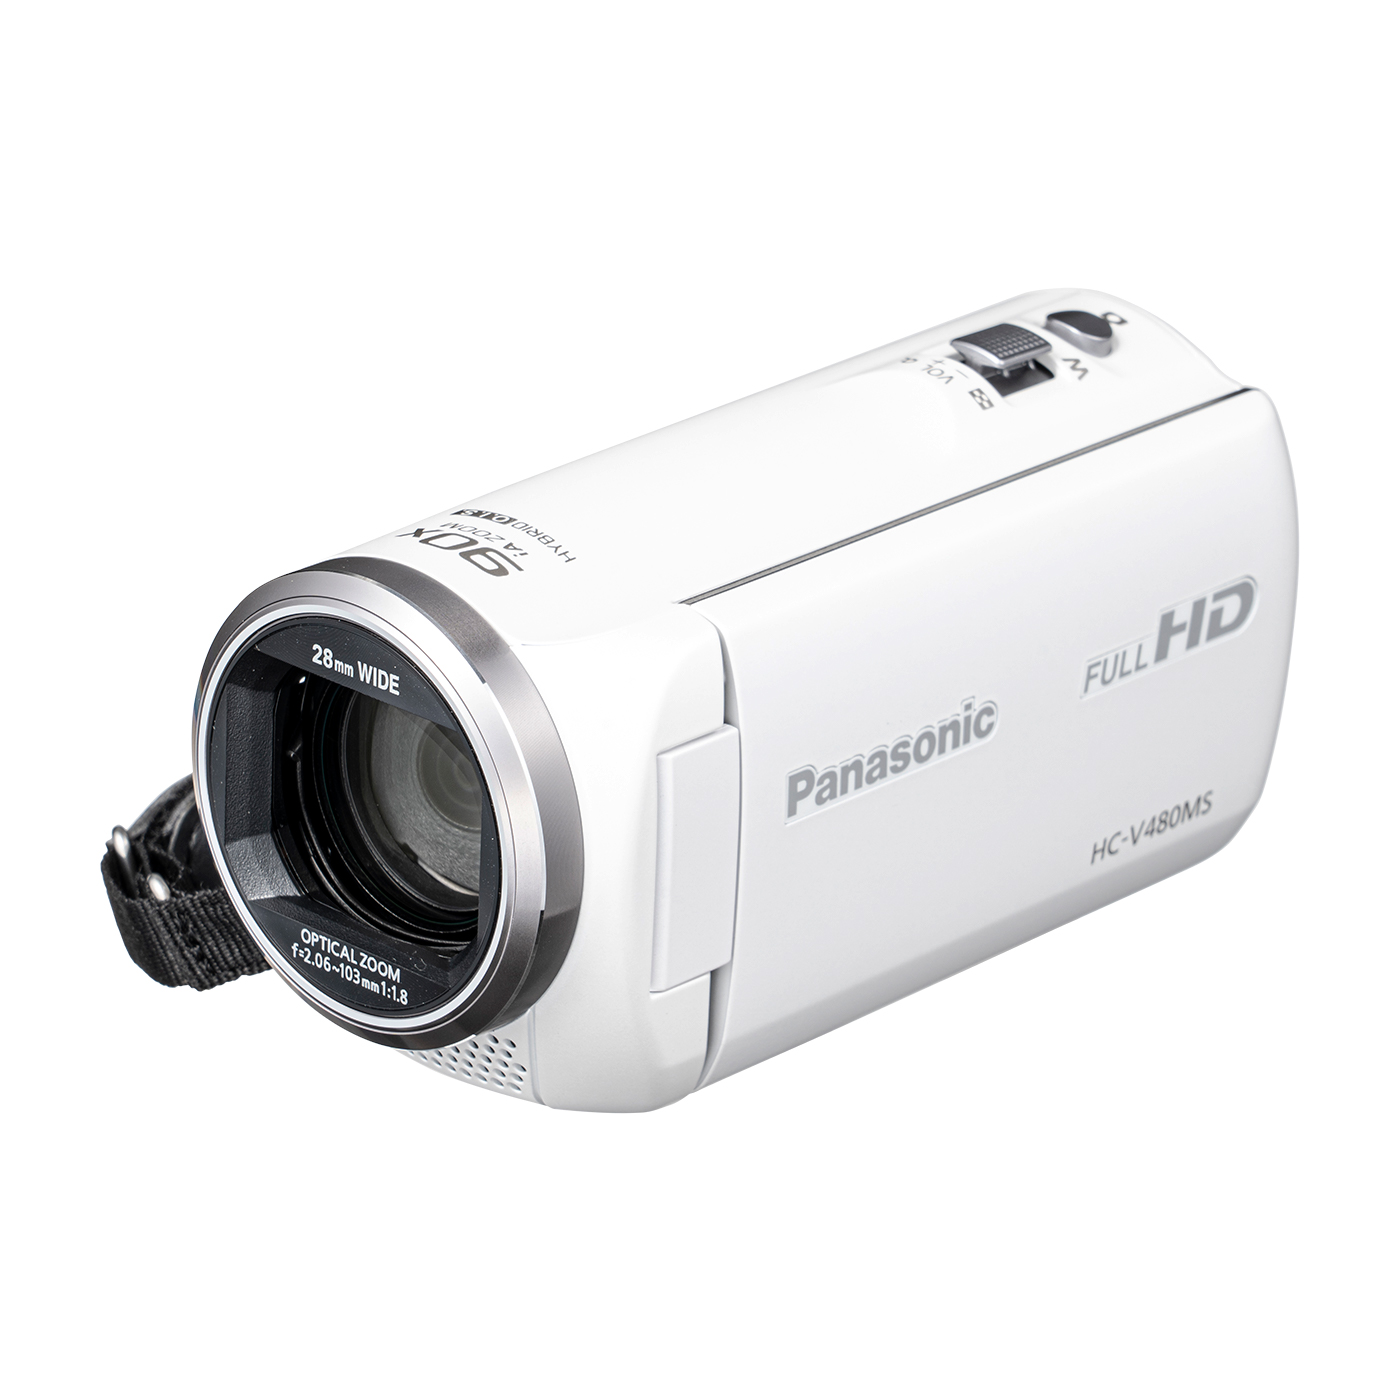 気質アップ】 Panasonic パナソニック HC-V480MS ビデオカメラ - blogs ...